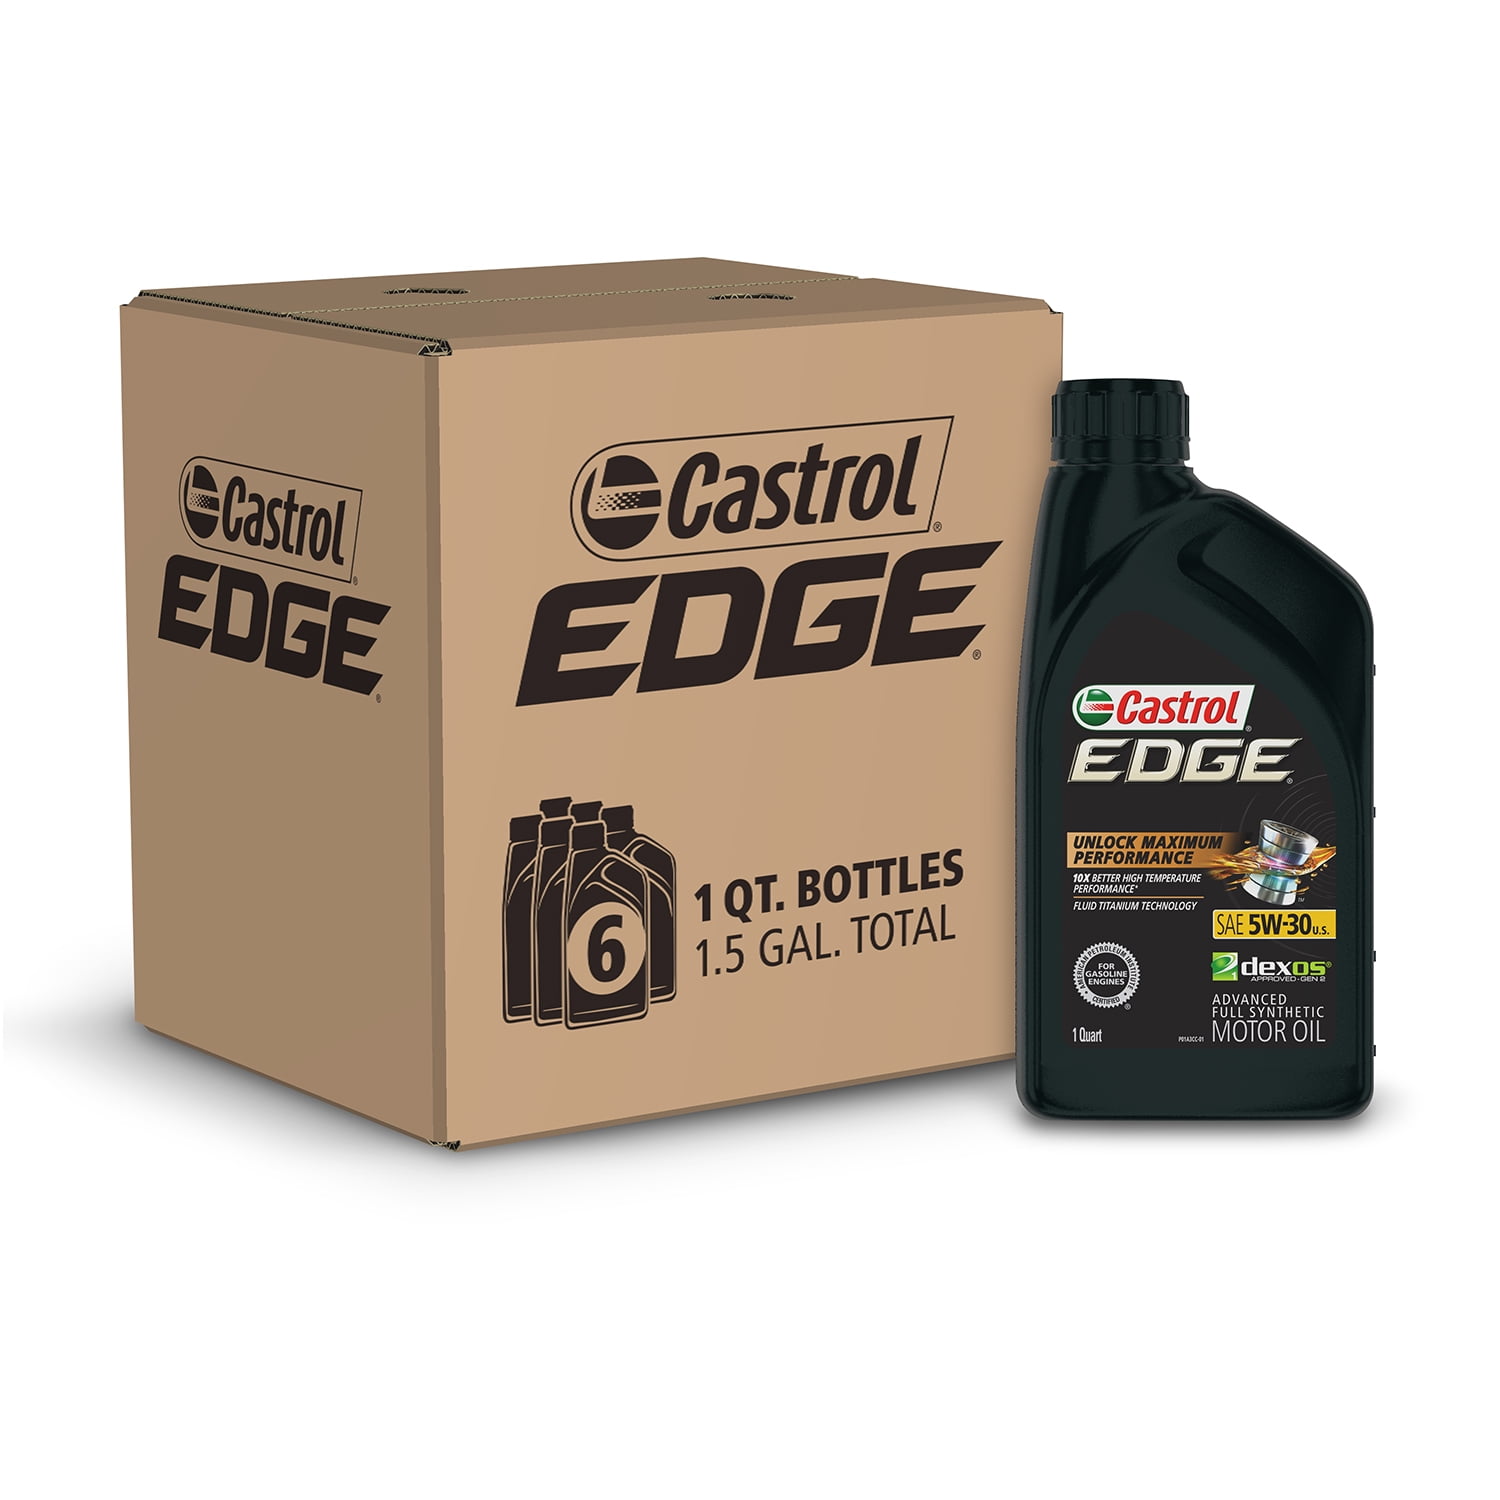 Castrol Edge 5W-30 Advanced Full Synthetic Motor Oil, 1 Quart, Case of 6 